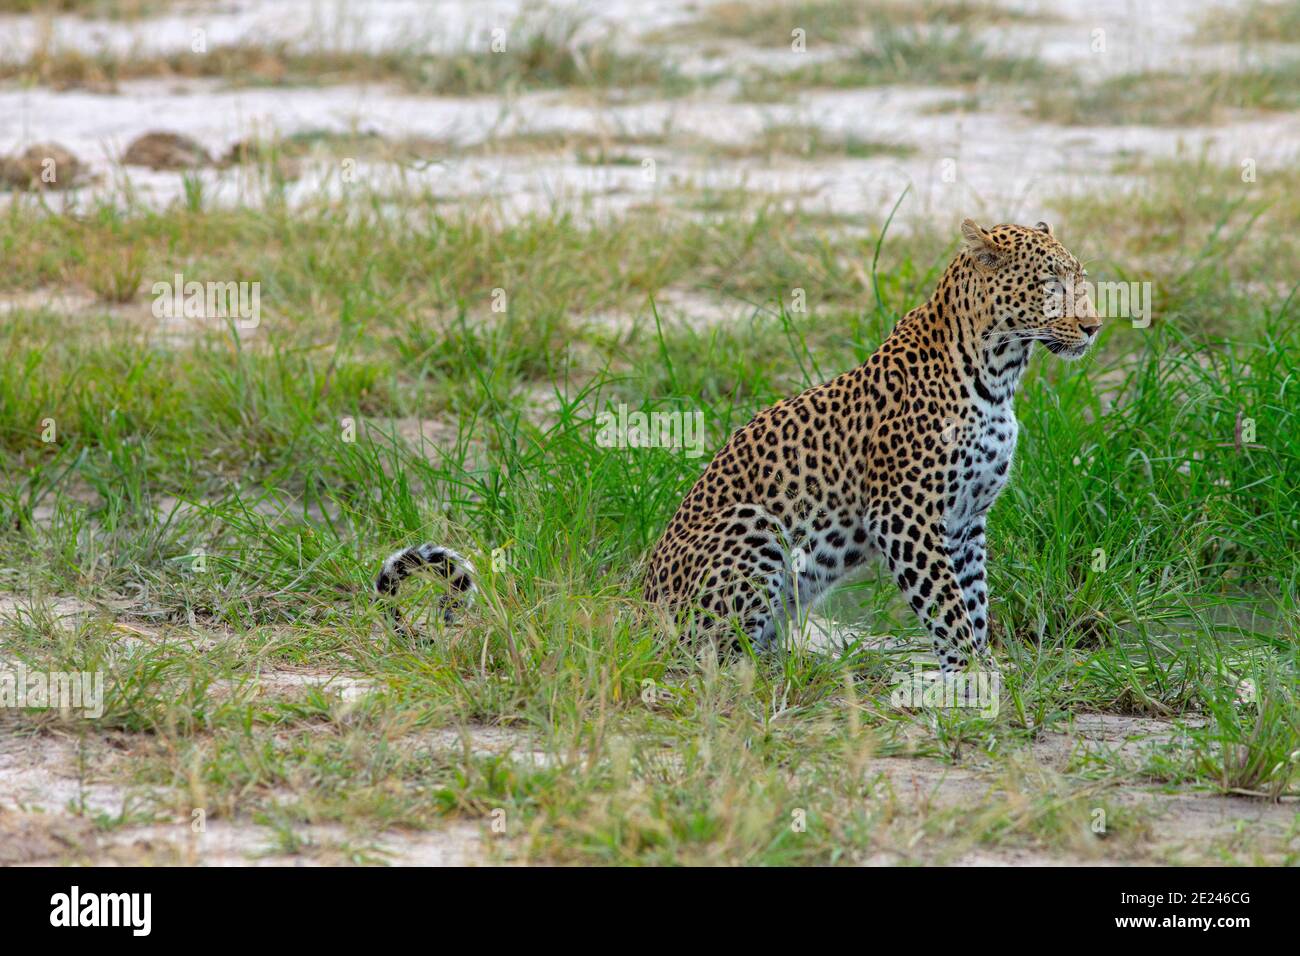 Leopard (Panthera pardus). Neben einem kleinen Wasserloch sitzend und vorsorglich die Landschaft betrachtet, bevor man zum Trinken nach unten greift. Stockfoto